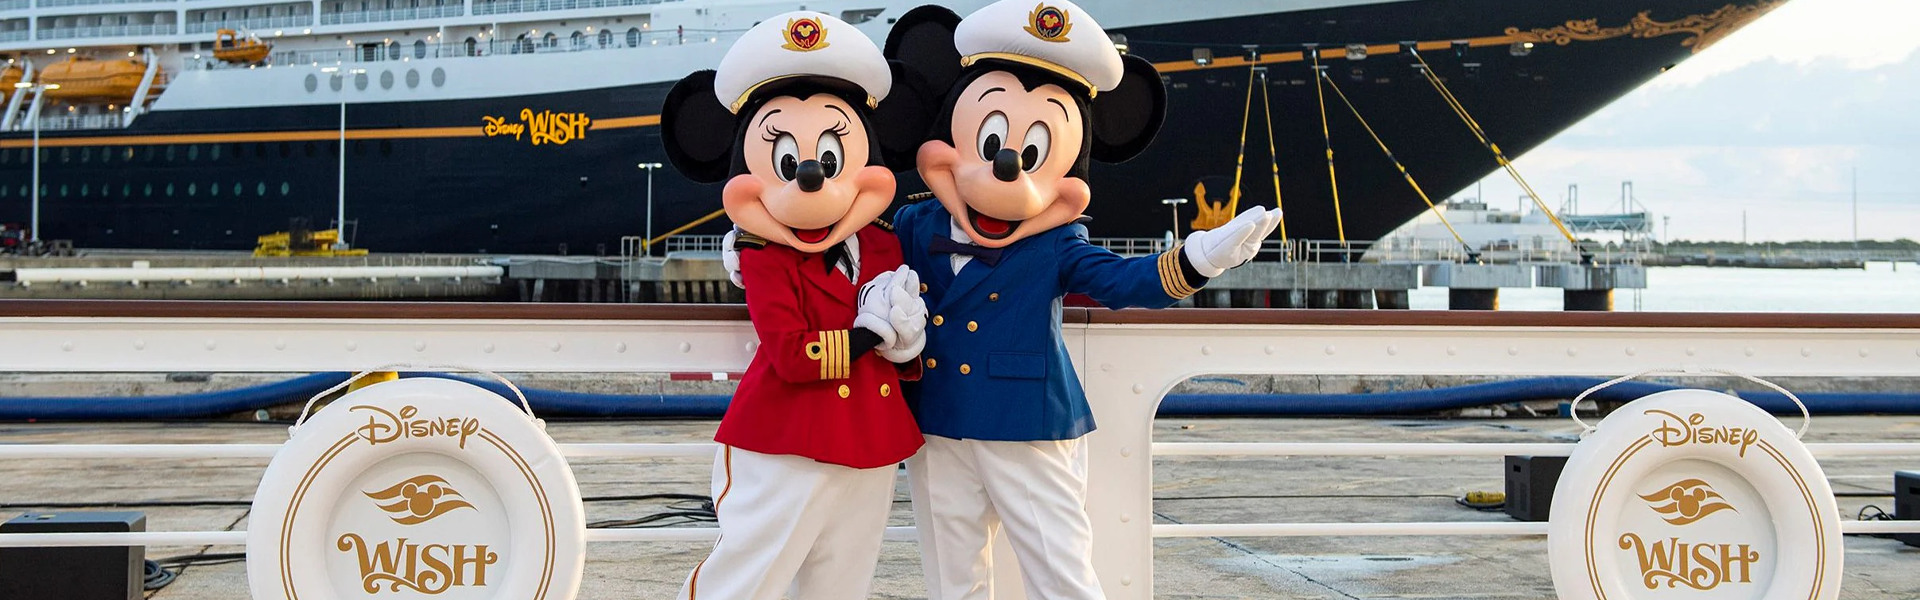 Северная Америка с магией Disney Cruise Line